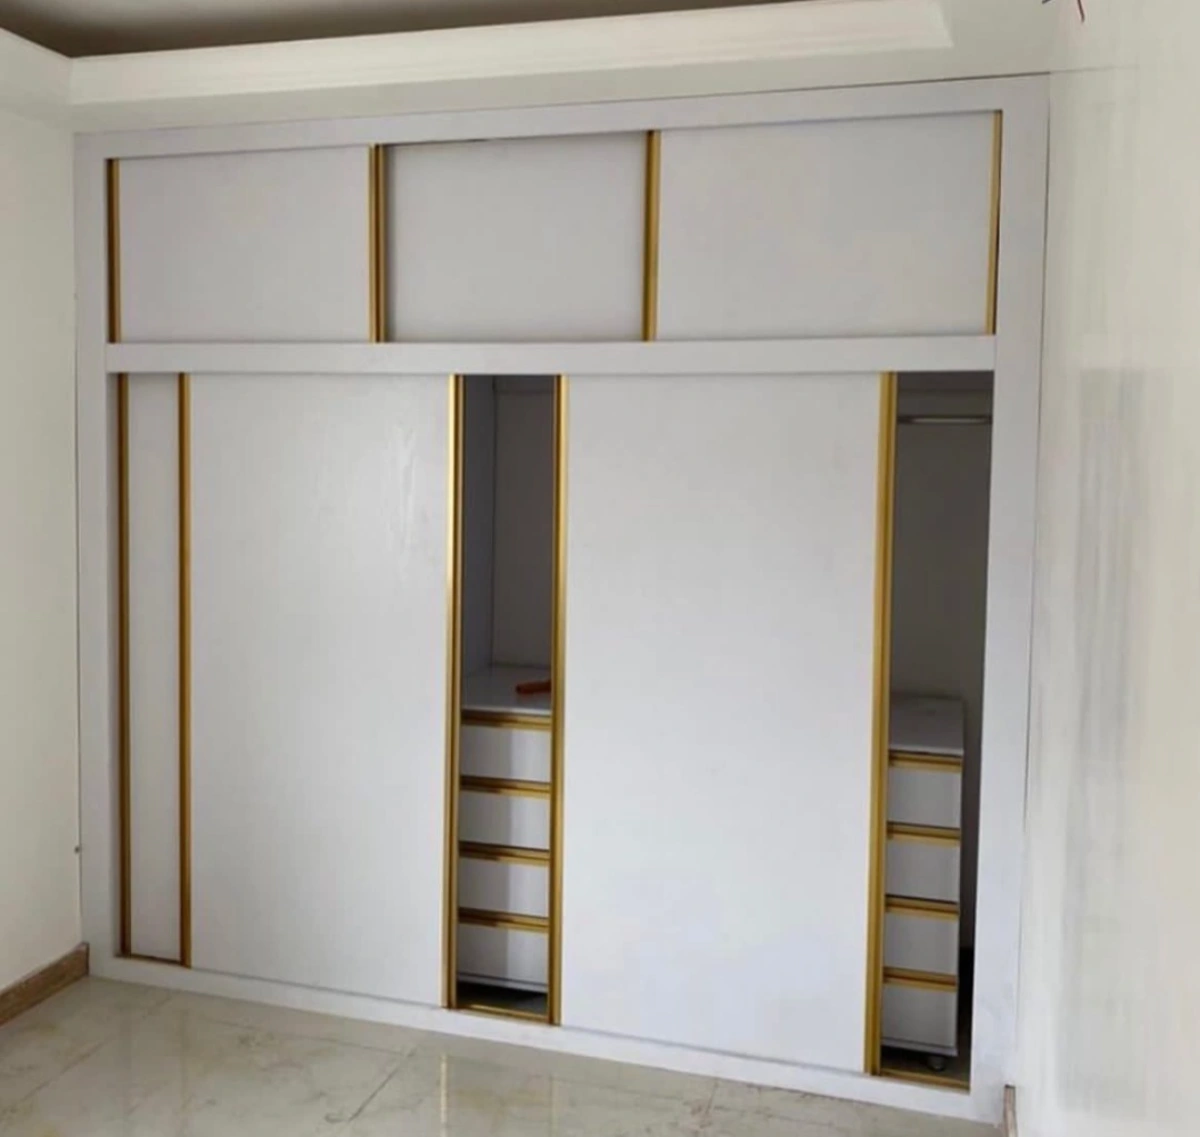 نمونه اجرا شده از کمد با درب ریلی رنگ سفید در ترکیب با طلایی برای اتاق کوچک